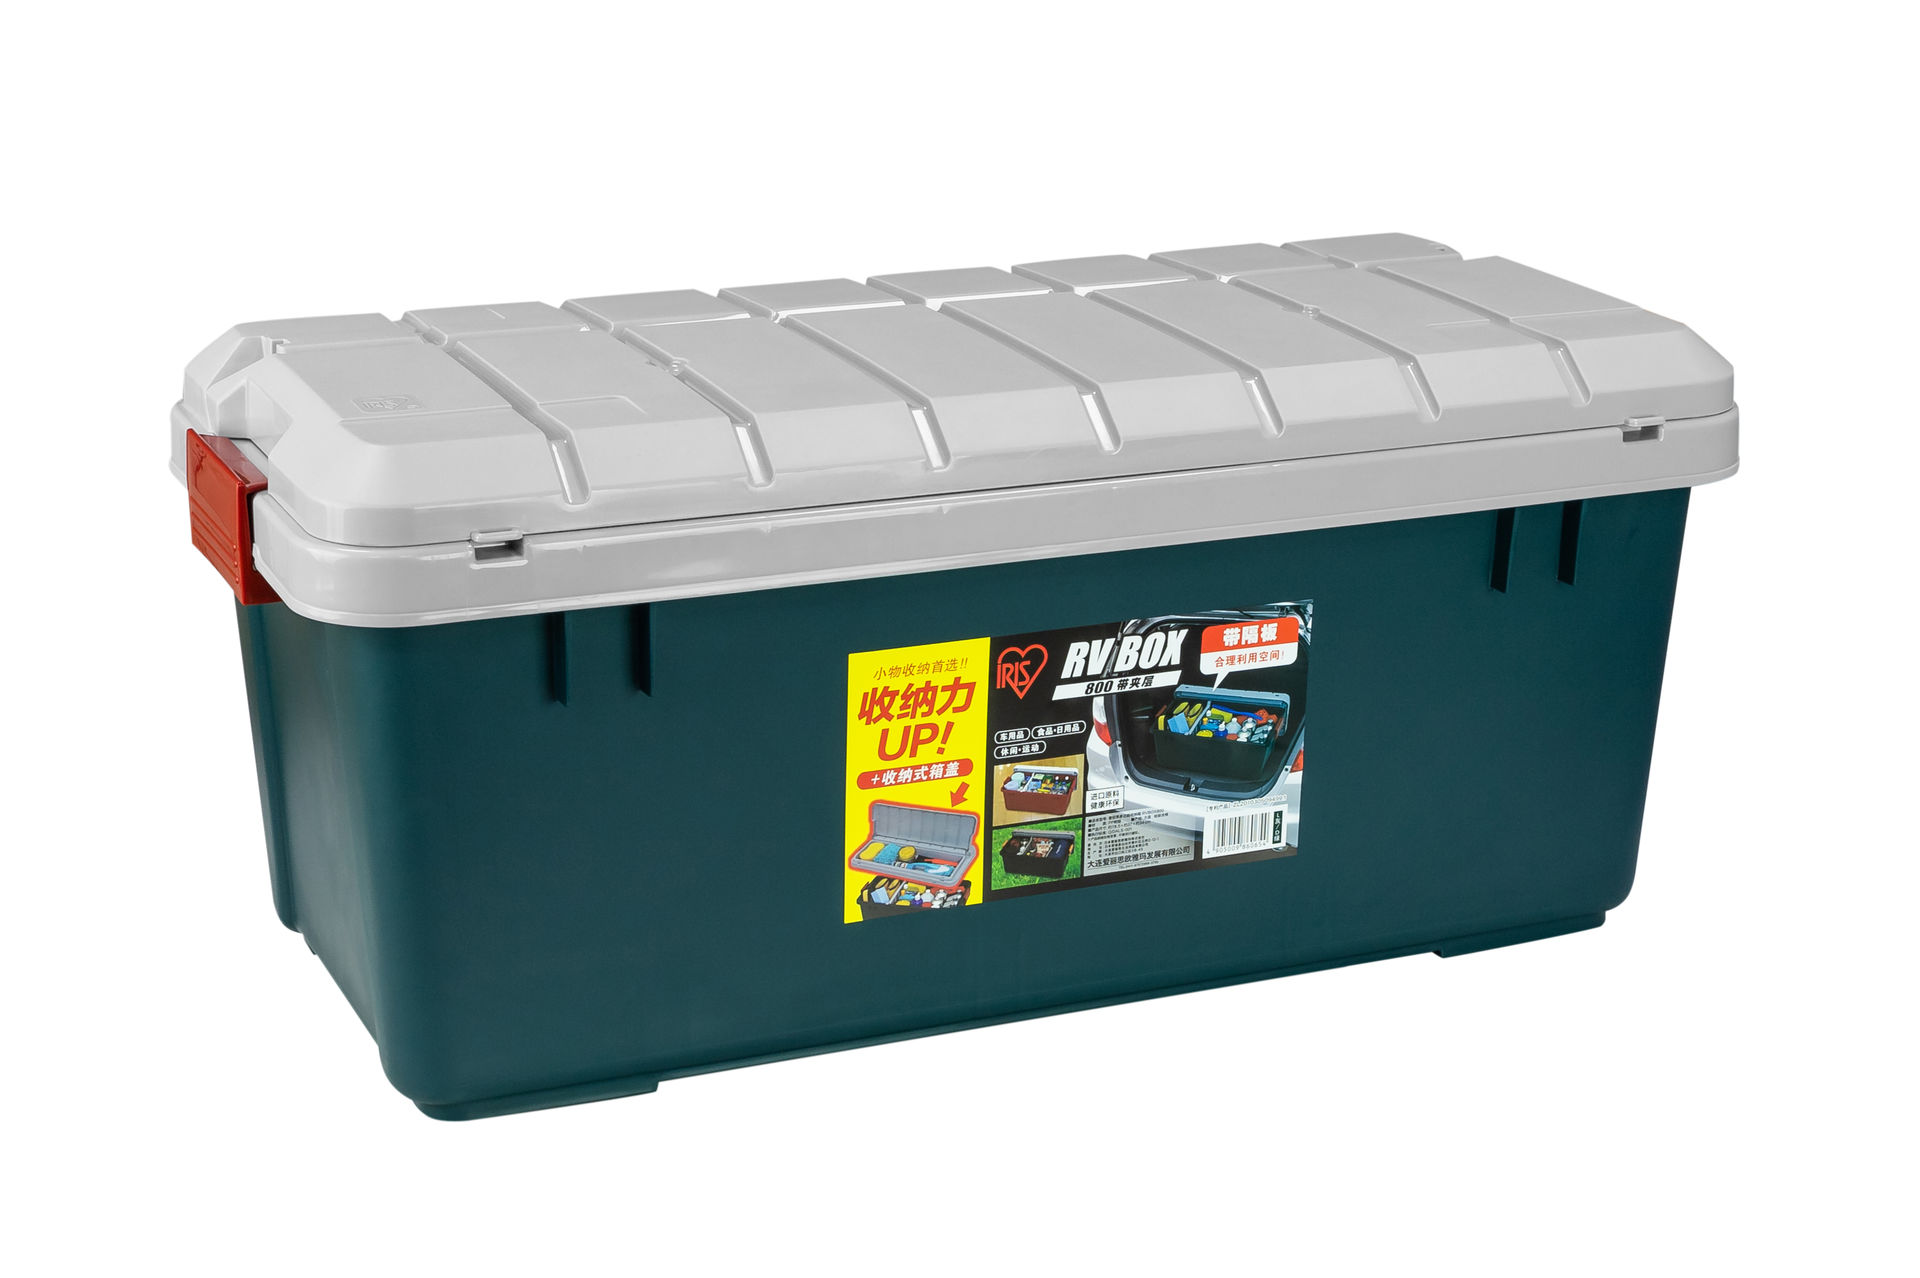 Бокс RV BOX 800 с двойной раздел крышкой, 78,5x37,5x34см, нагрузка на крышку 80 кг, емкость 80л